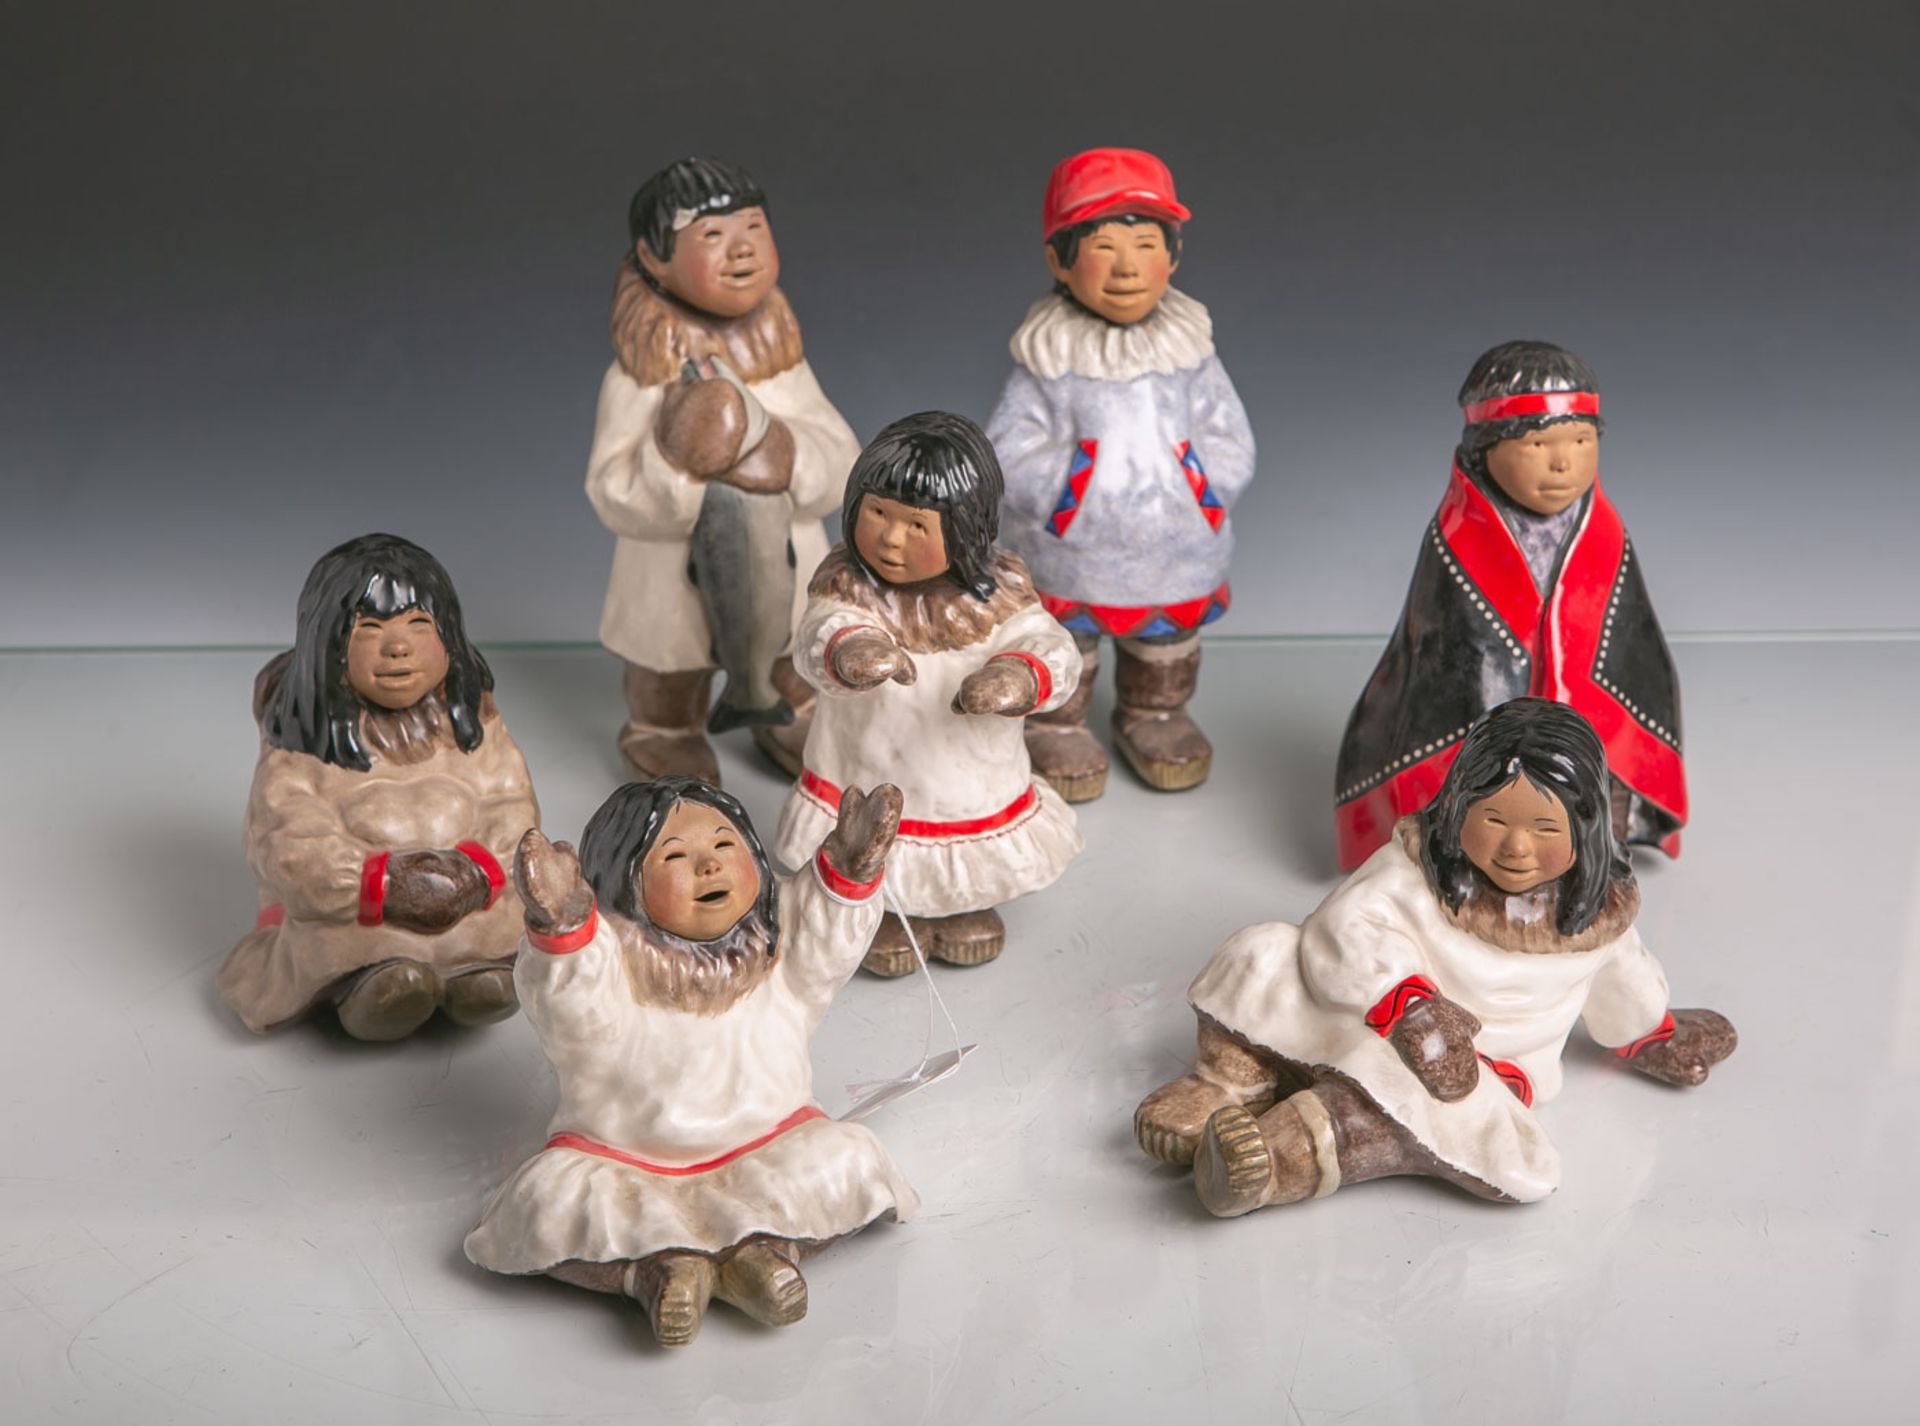 7 kl. Kinderfiguren von Eskimos von JCPenney, Serie "Alaska Figurine Collection", je sign.(